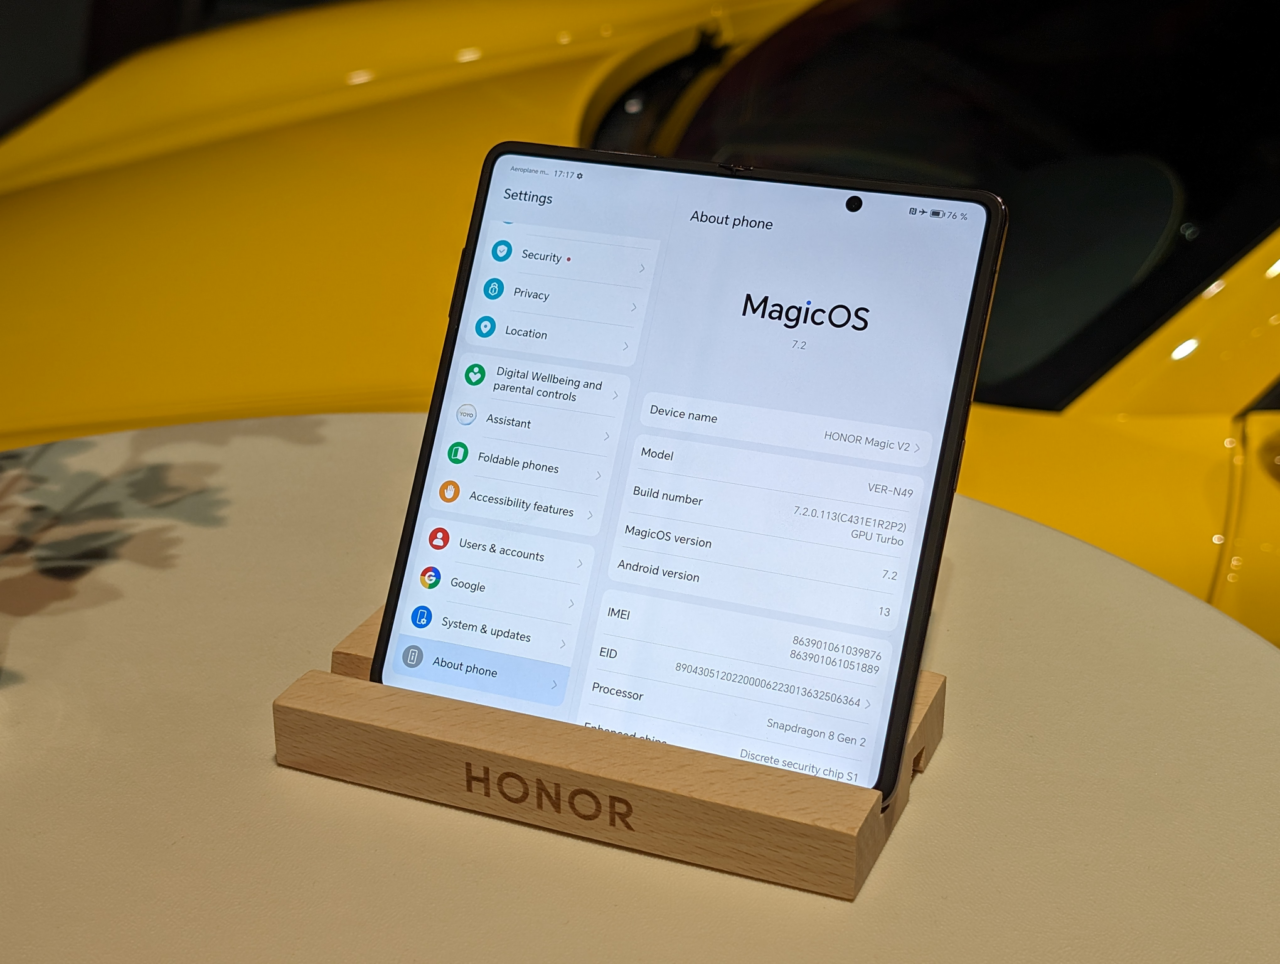 Smartfon Honor umieszczony na drewnianym podstawku z otwartymi ustawieniami systemowymi na ekranie, na tle żółtego obiektu.